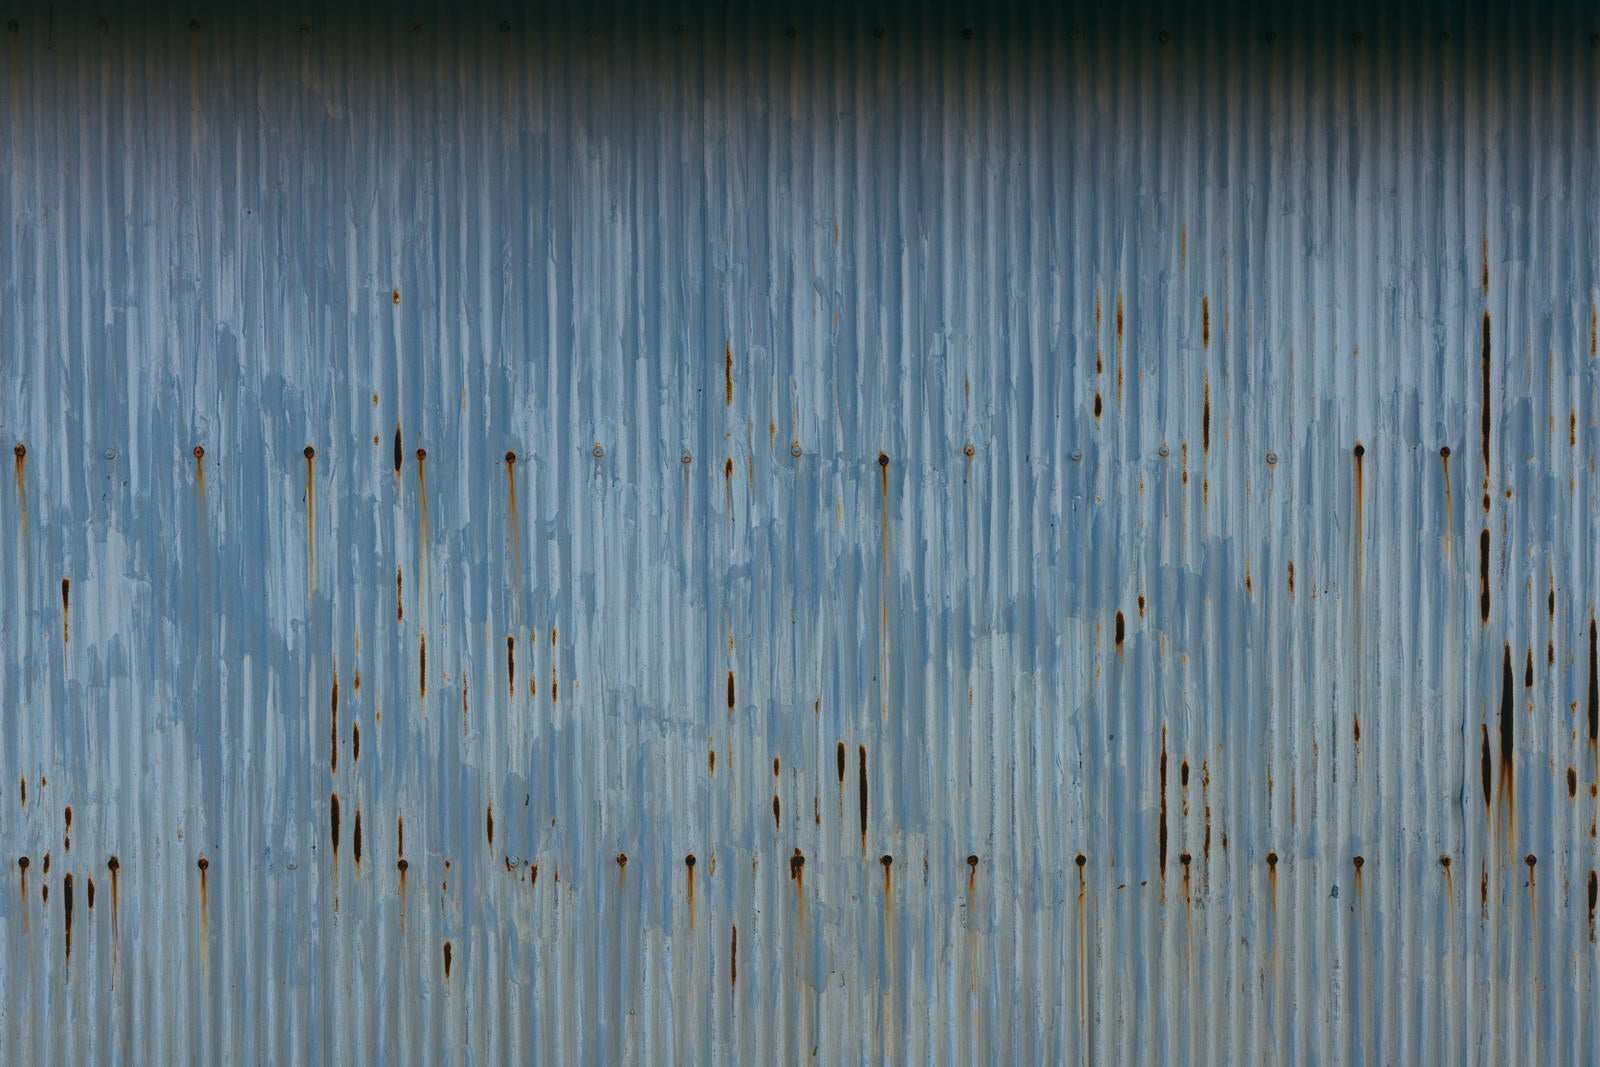 「錆が出た波板のテクスチャー」の写真